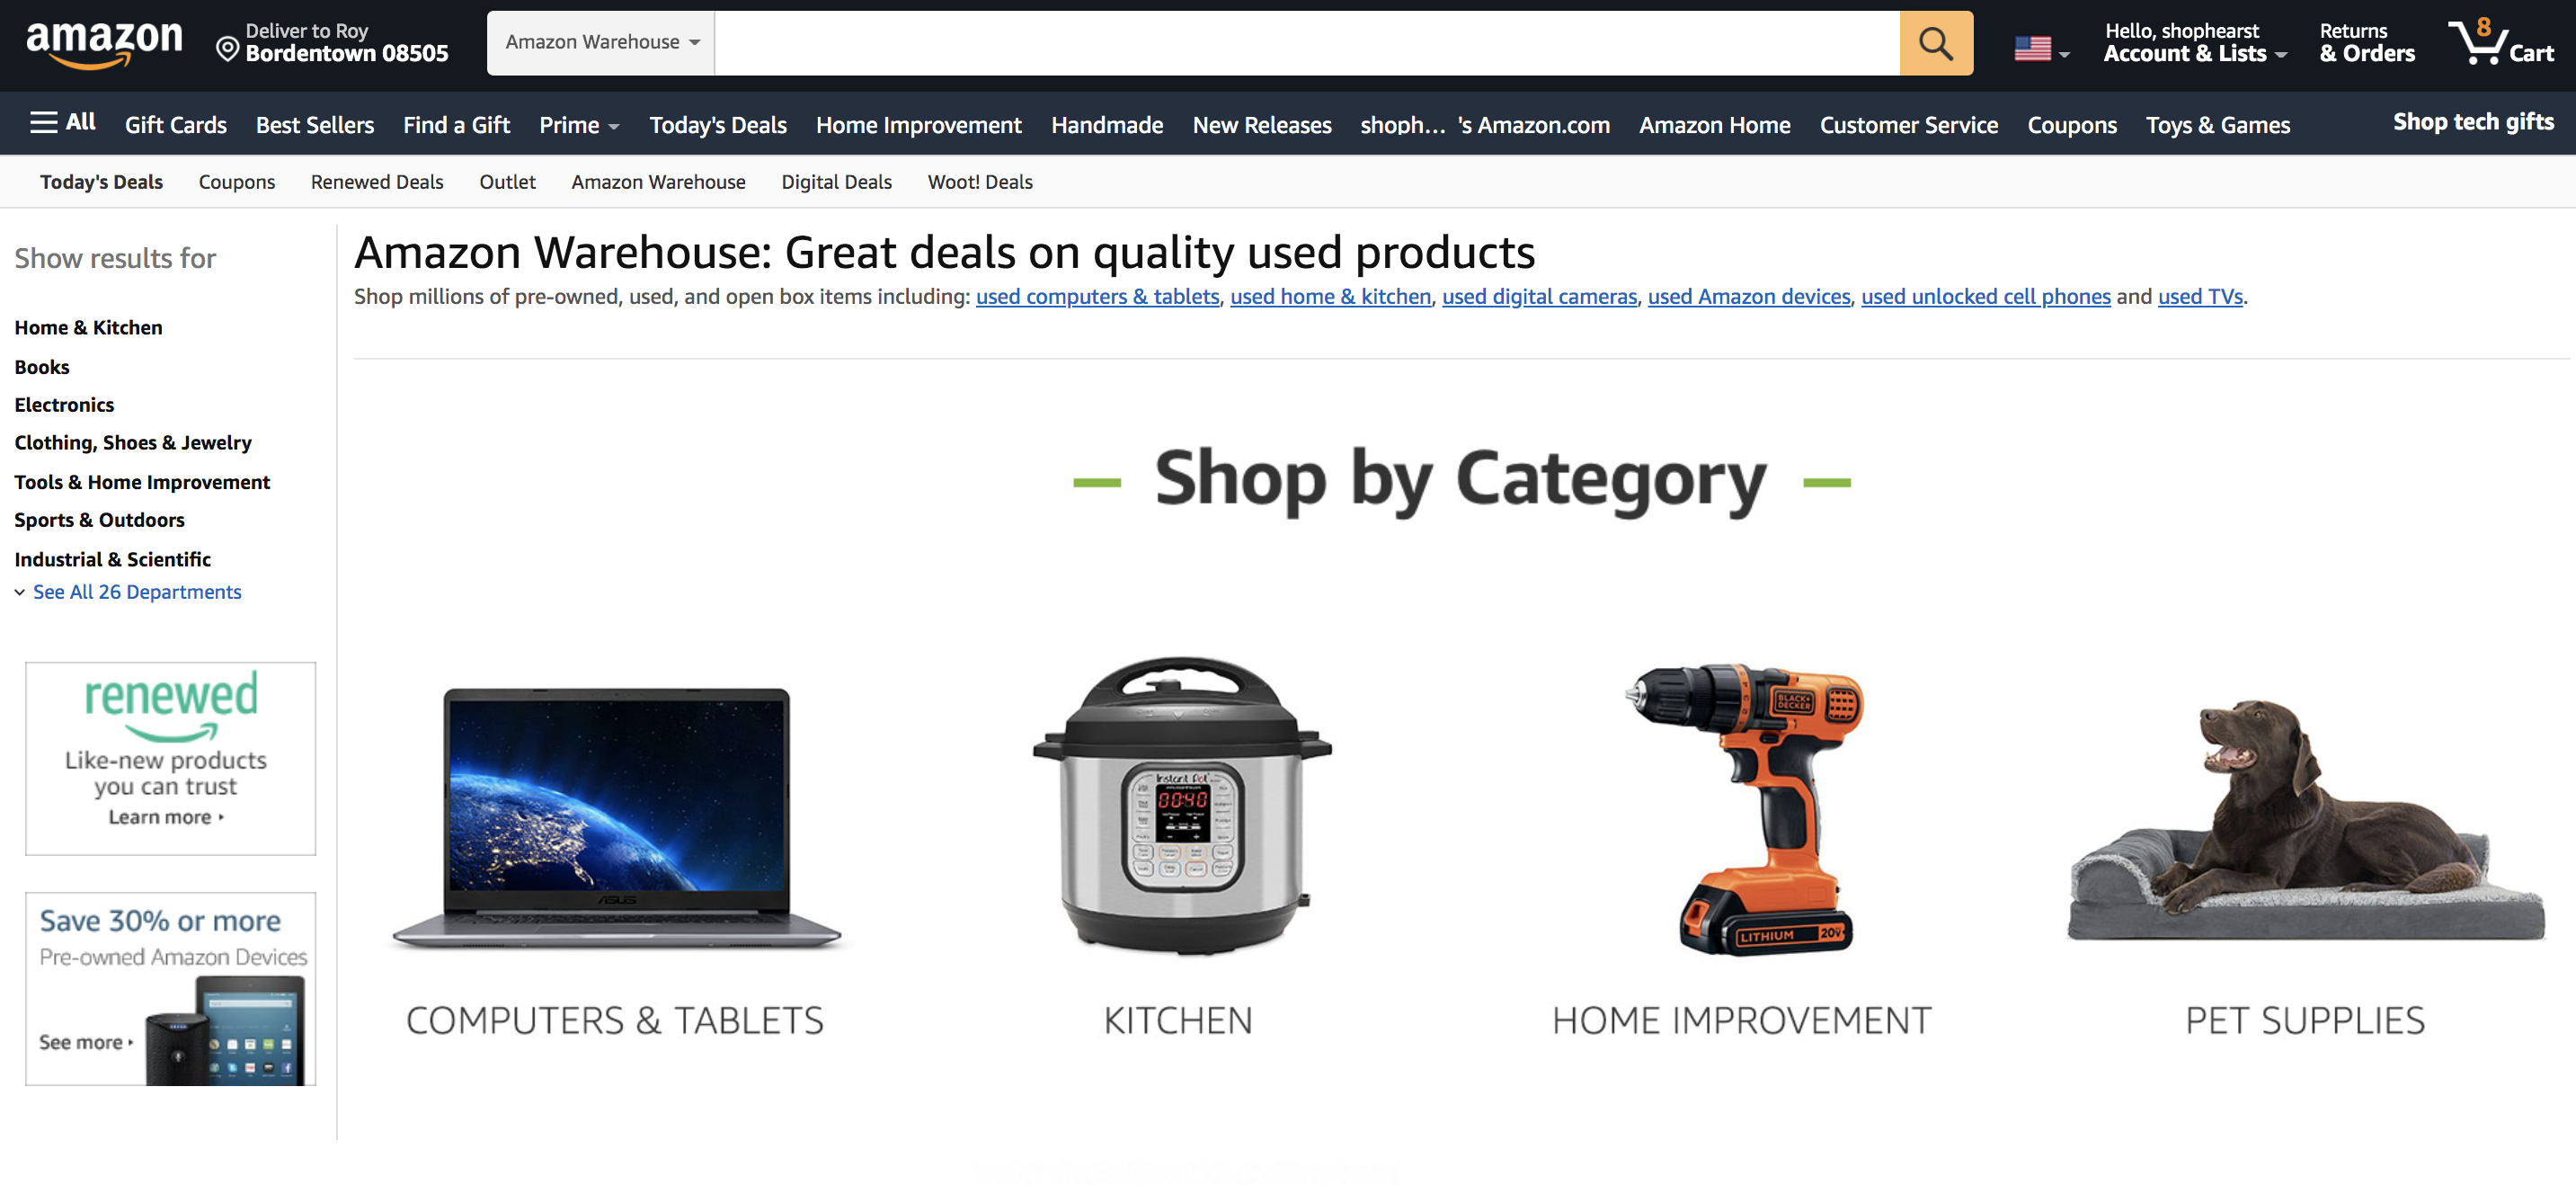 Amazon Warehouse Homepage 1607705394 